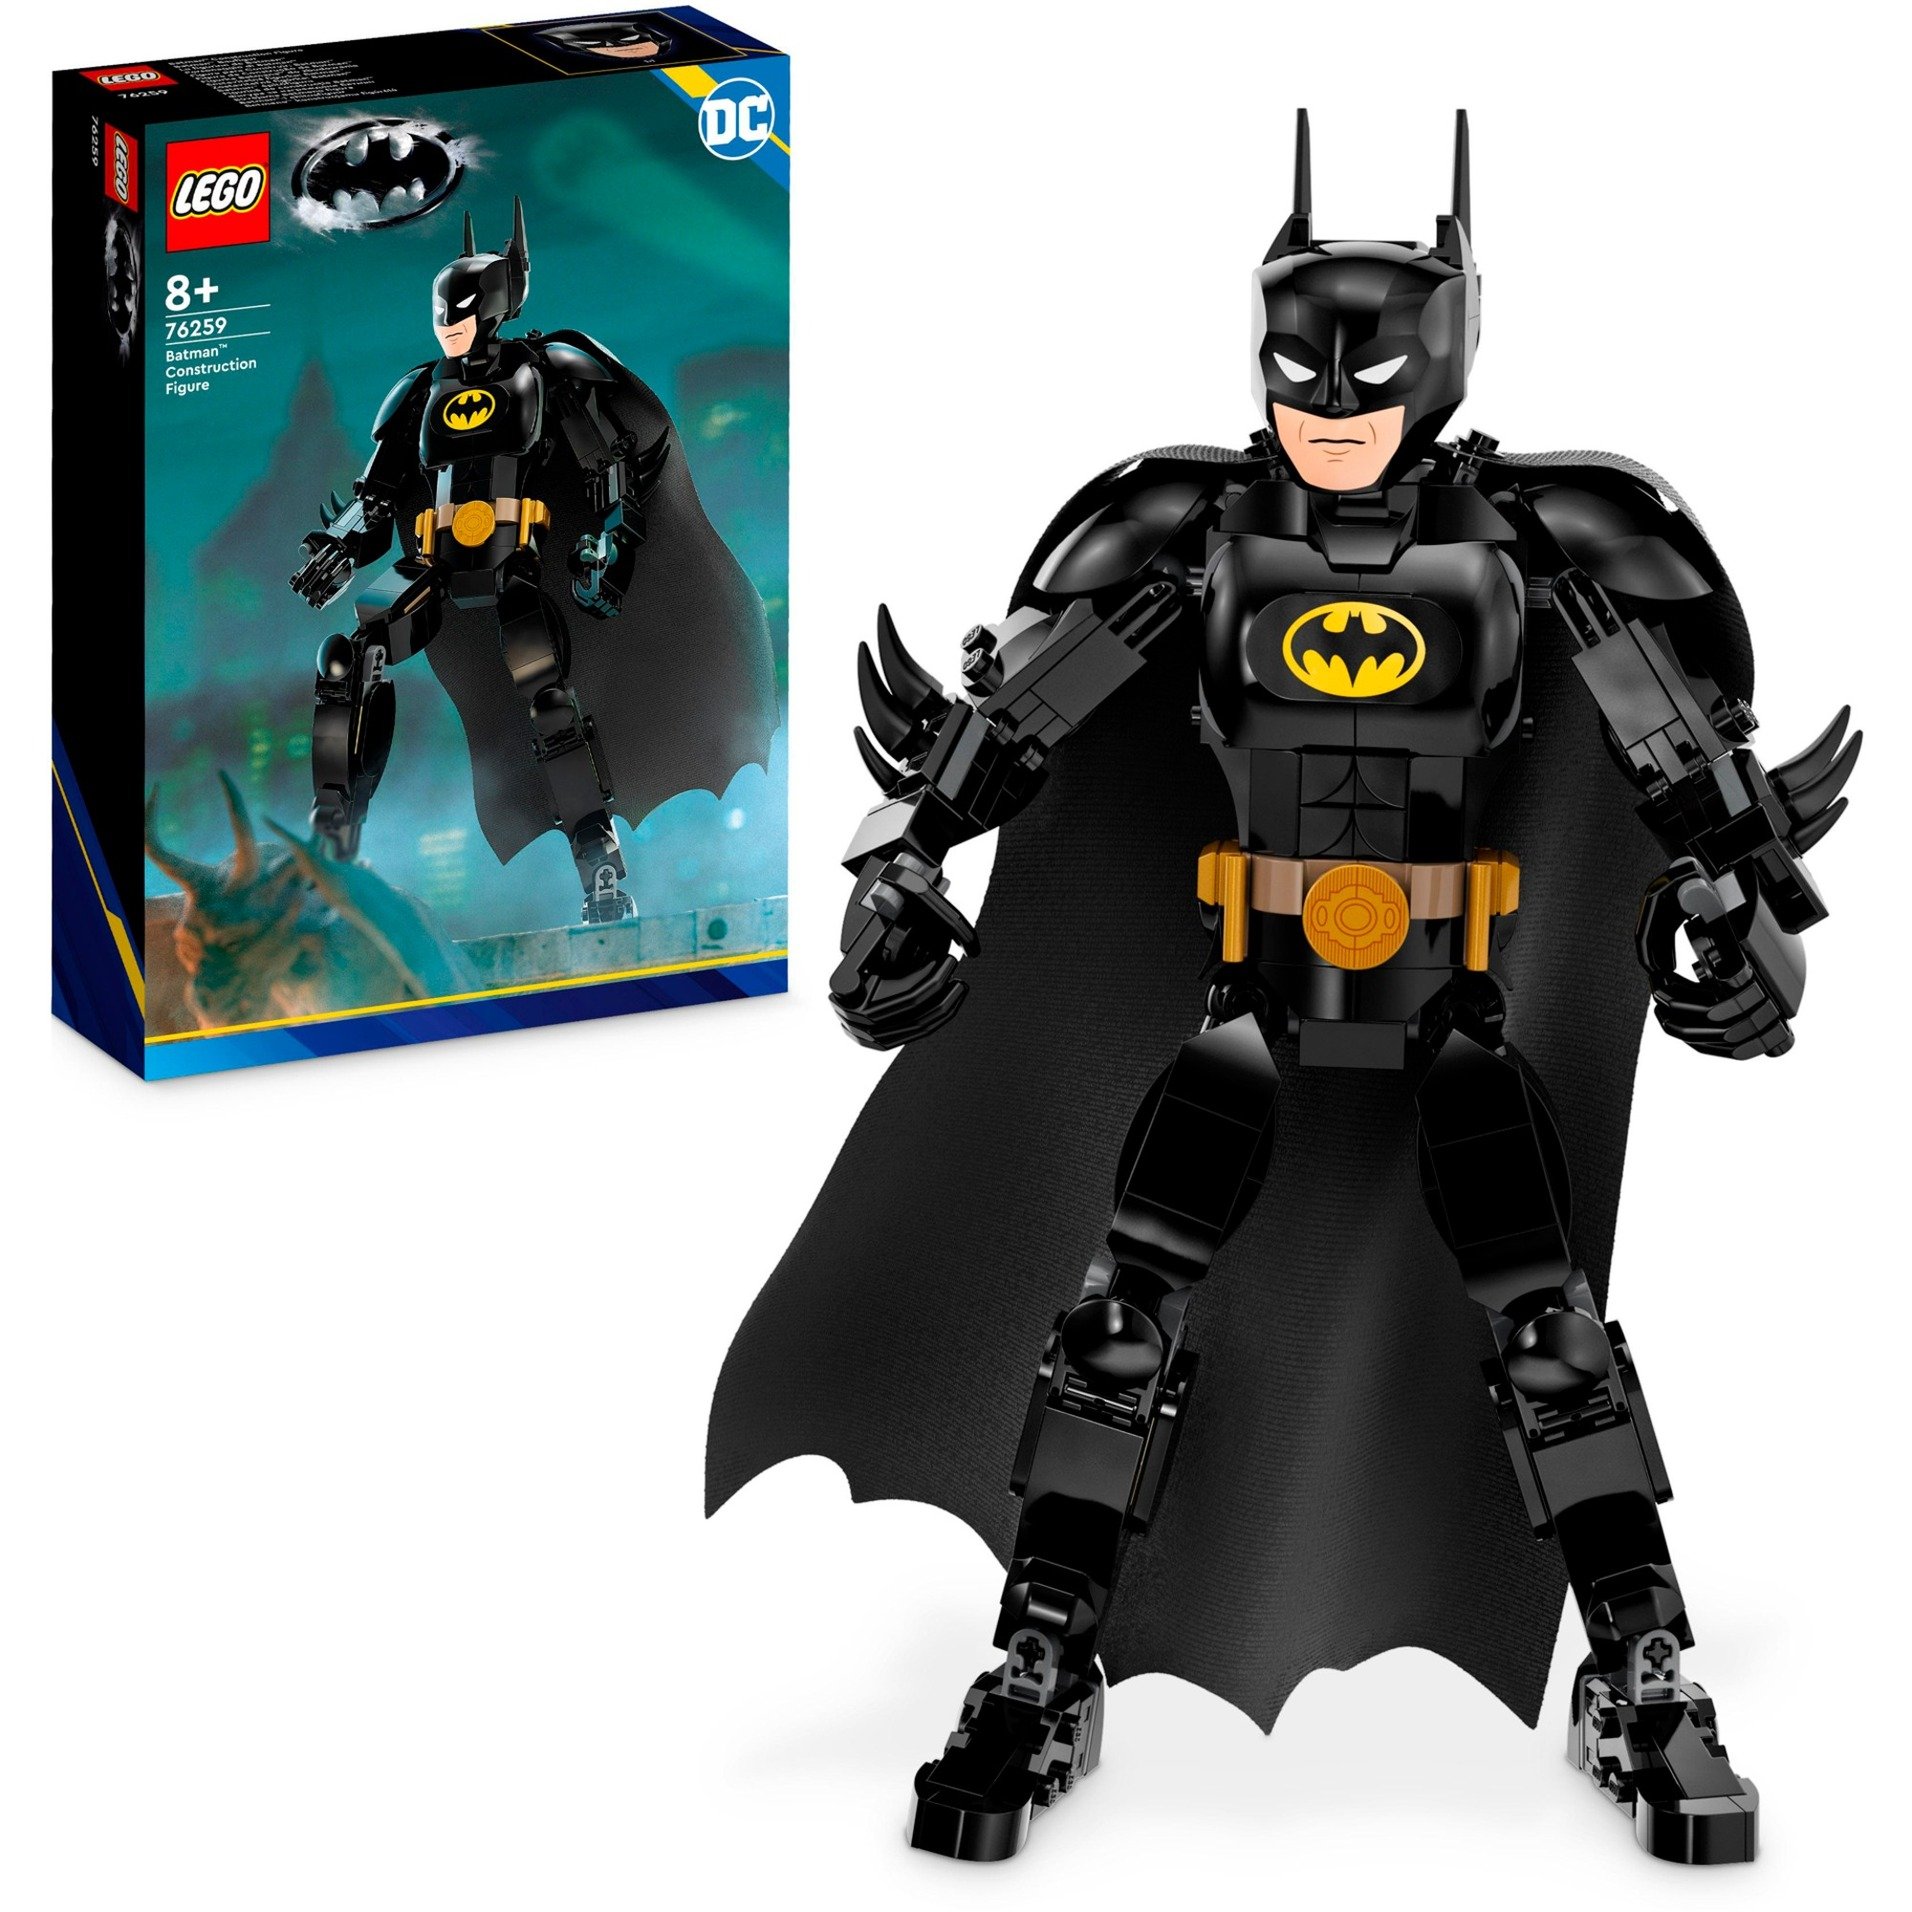 76259 DC Super Heroes Batman Baufigur, Konstruktionsspielzeug von Lego